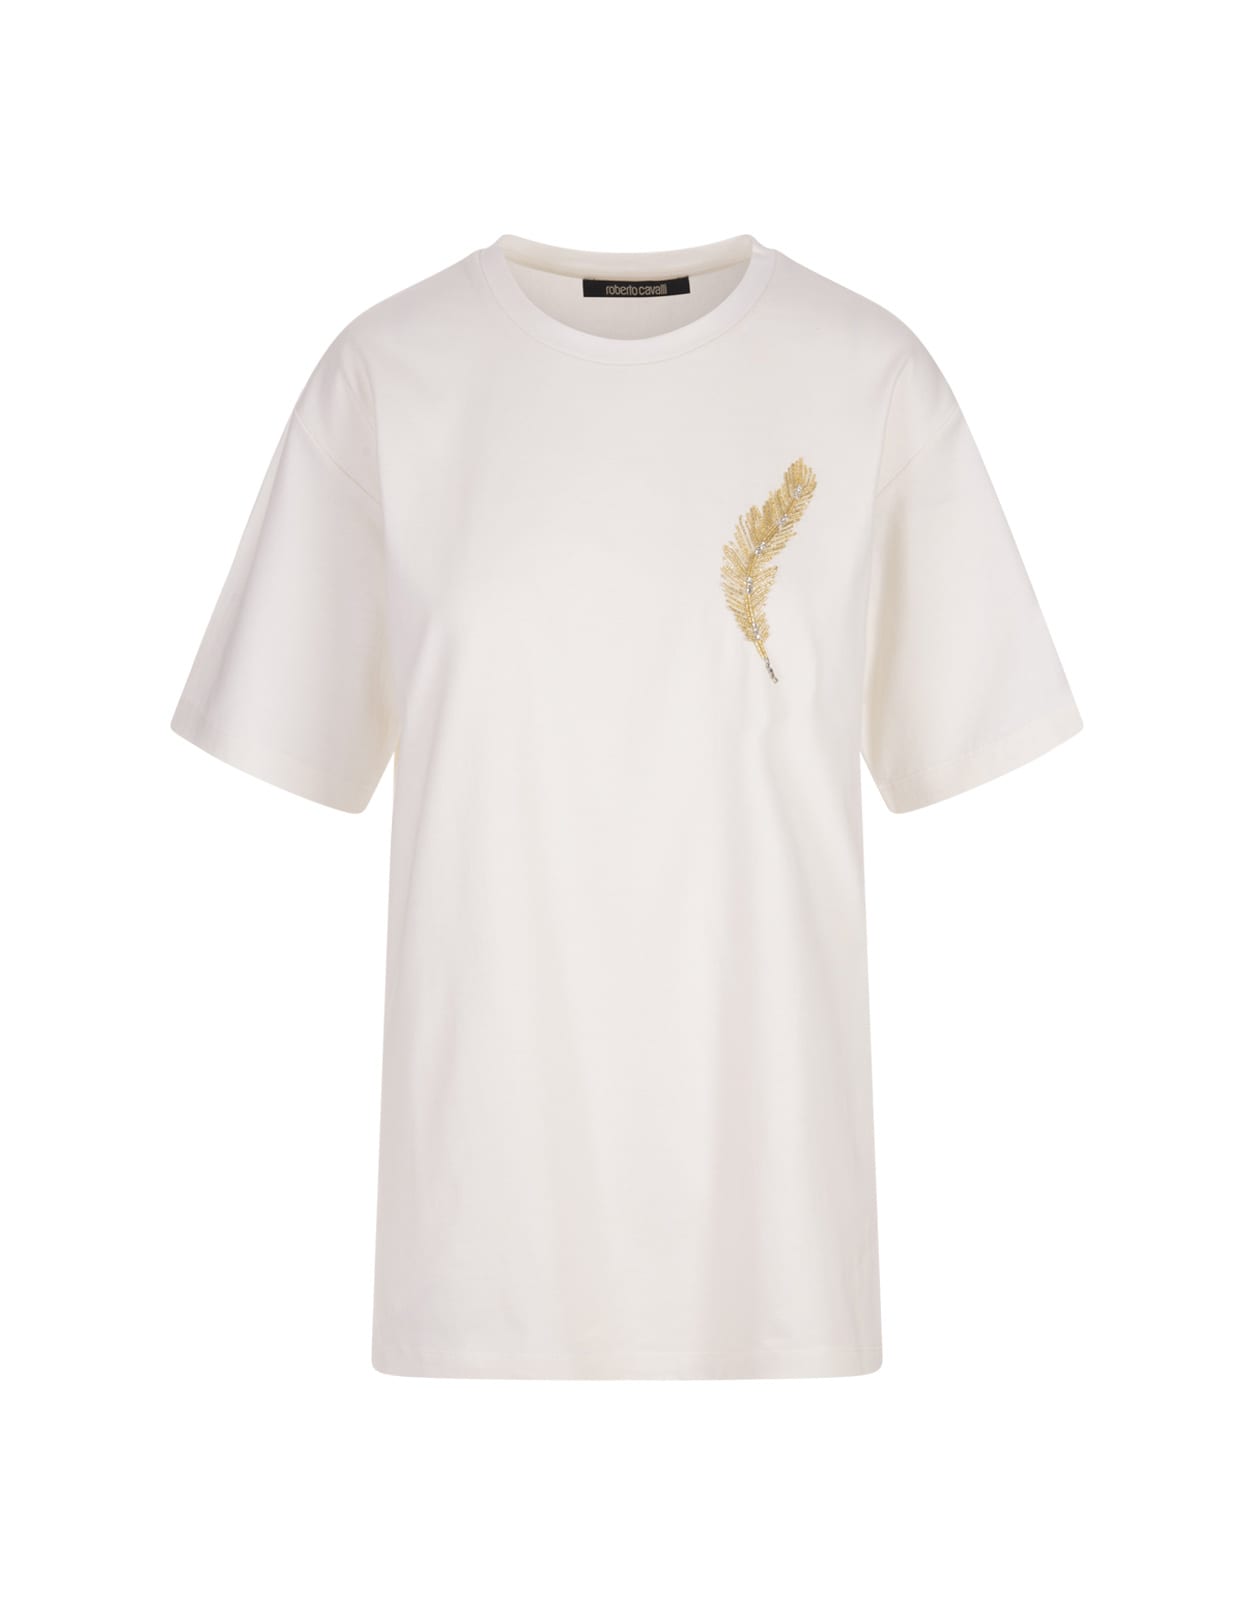 Roberto Cavalli Plumage T-shirt In White